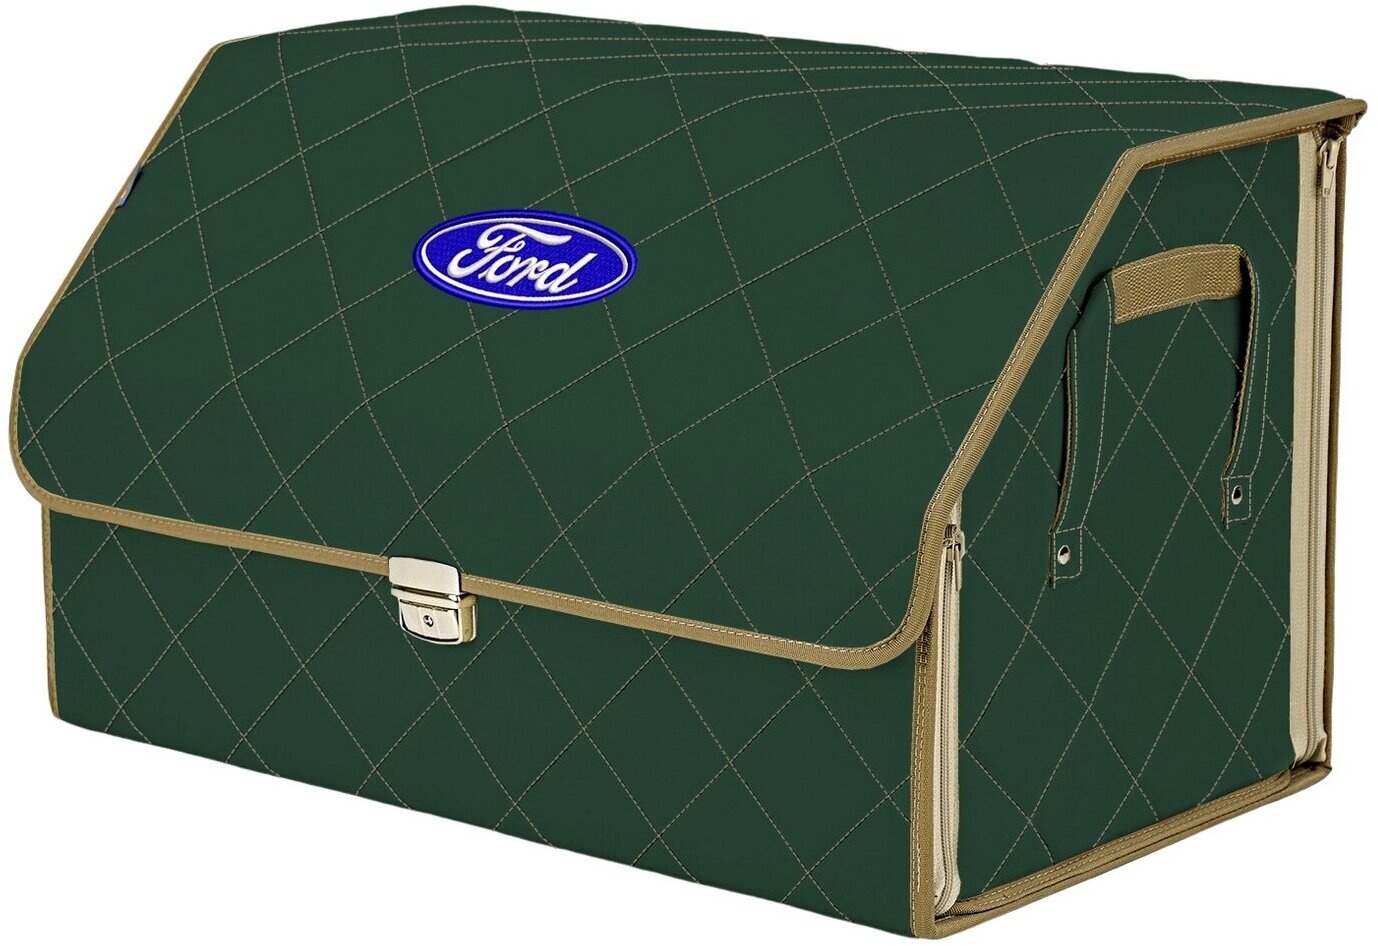 Органайзер-саквояж в багажник "Союз Премиум" (размер XL). Цвет: зеленый с бежевой прострочкой Ромб и вышивкой Ford (Форд).